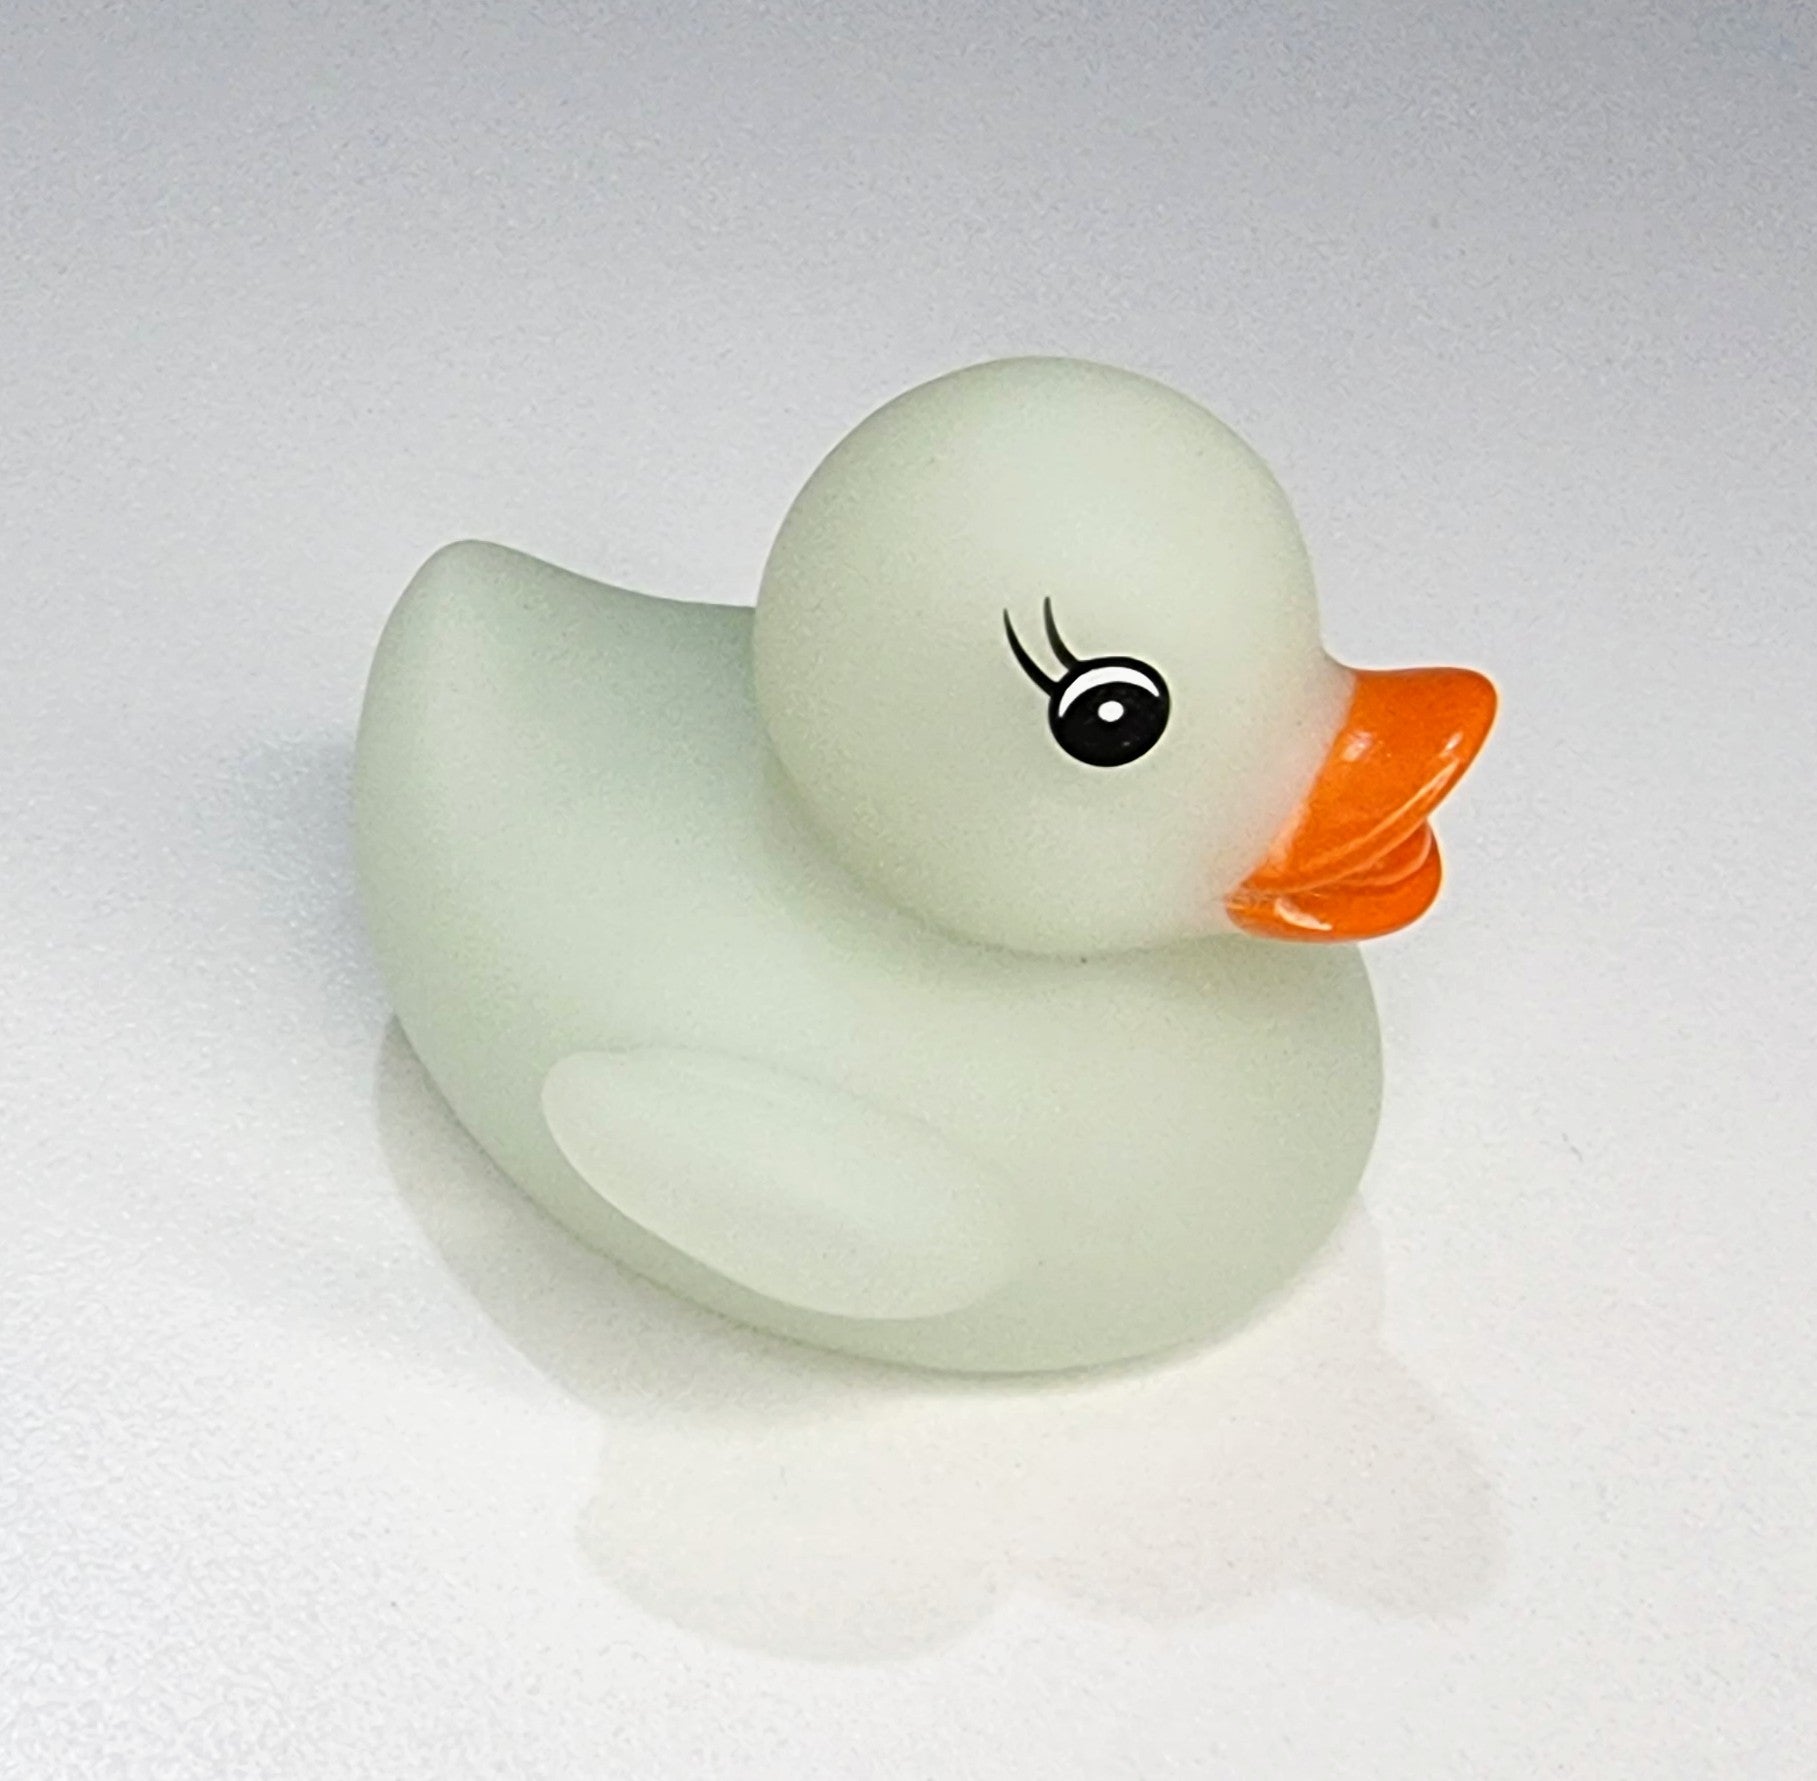 white bath duck glow in dark rubber duck